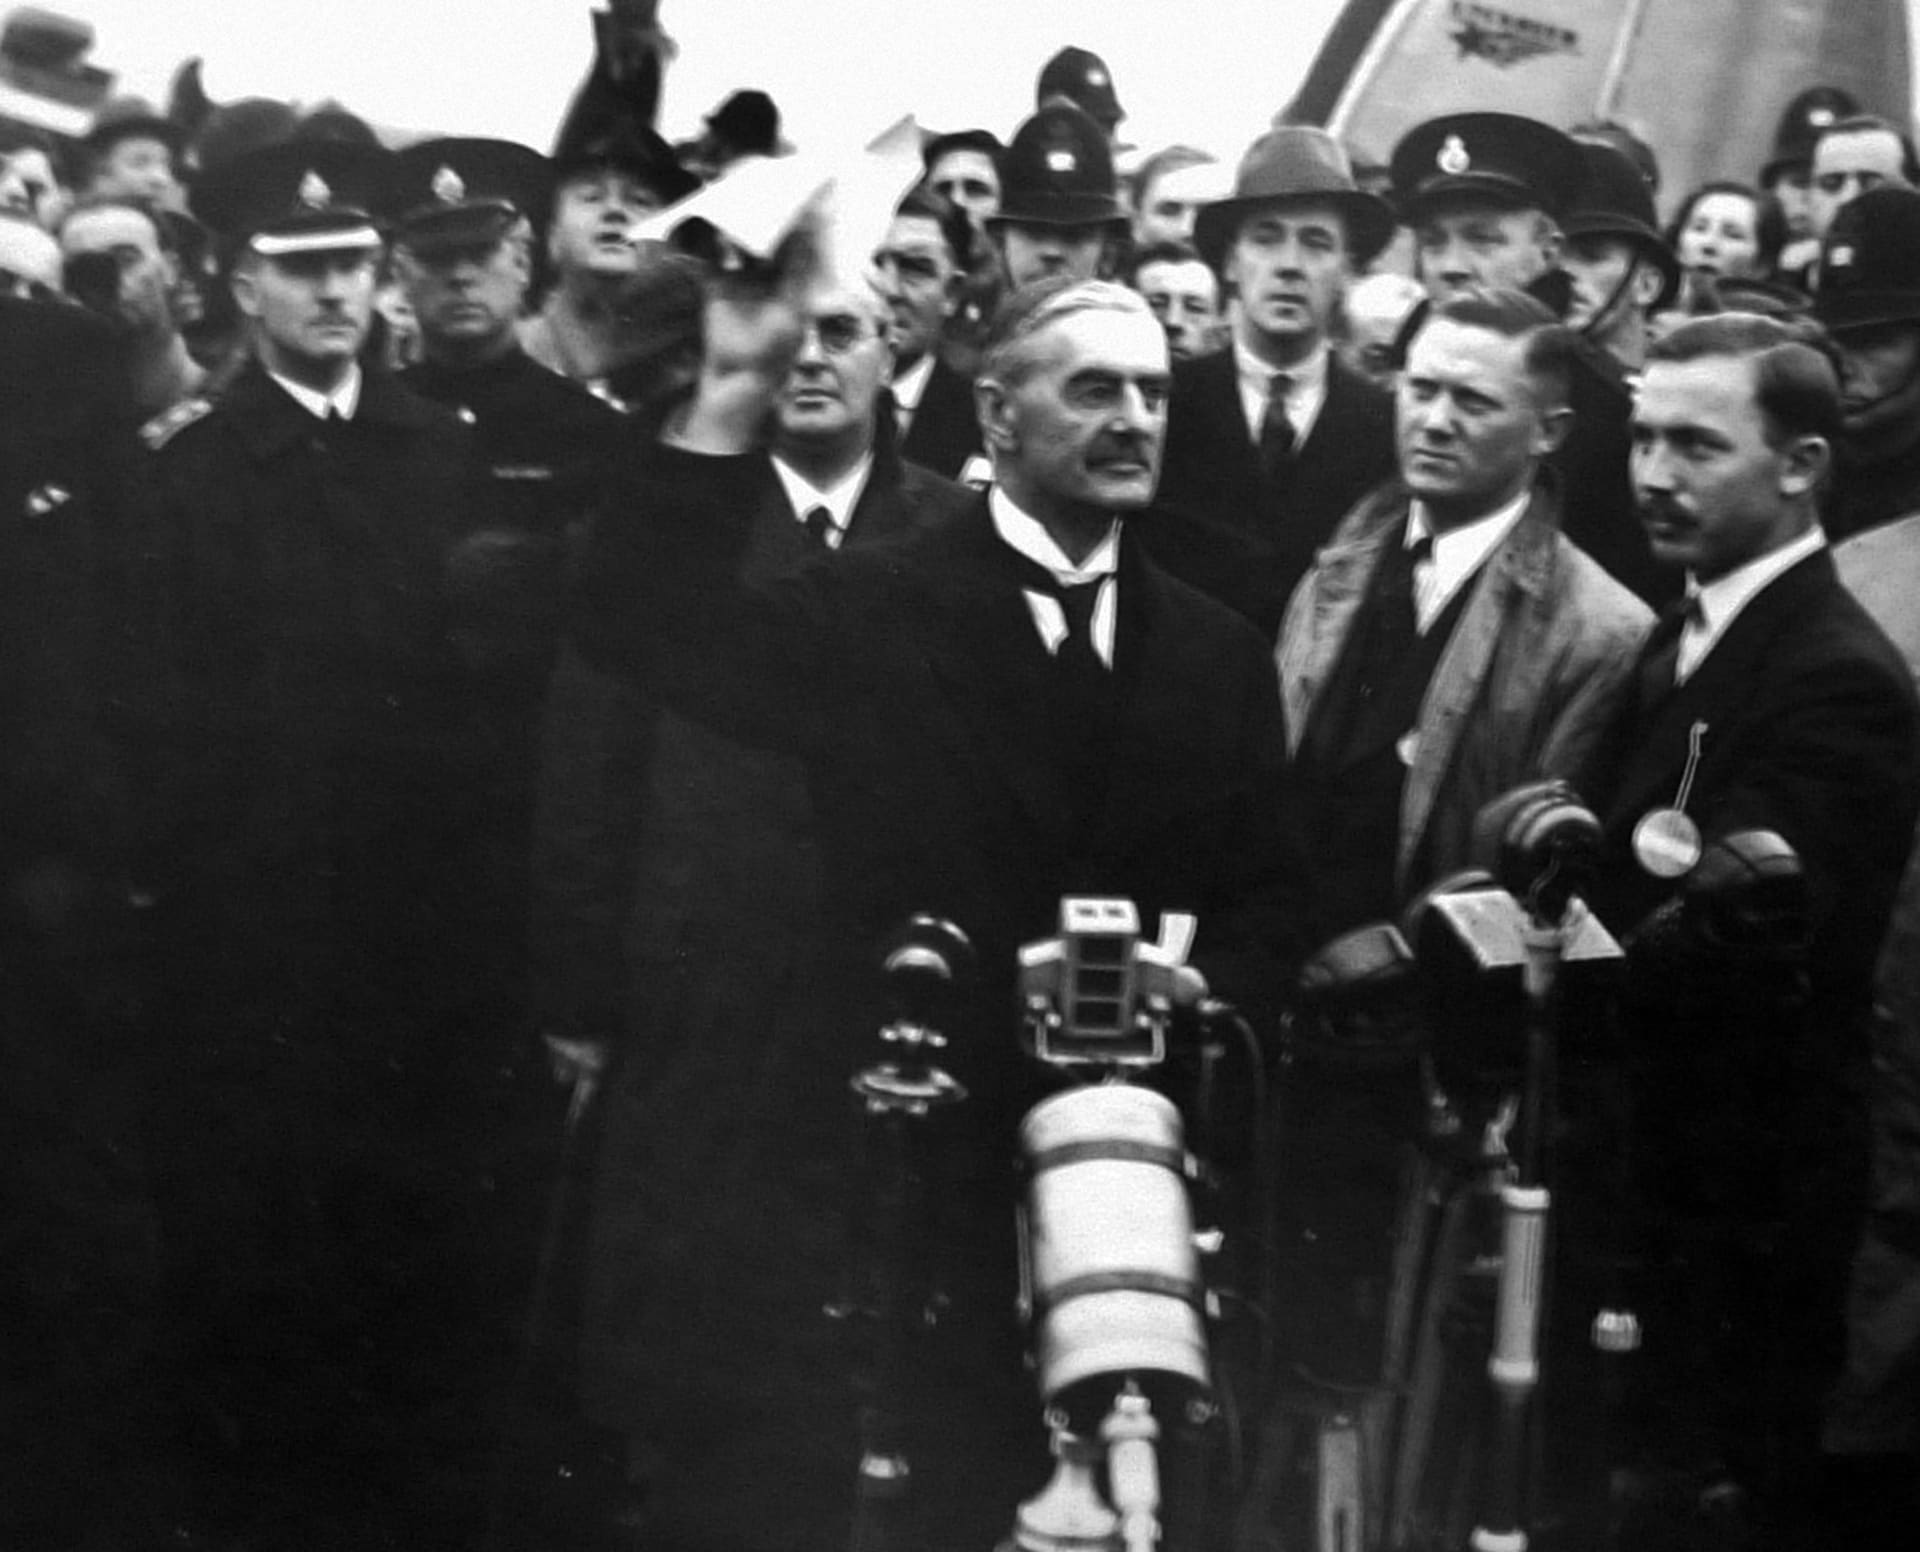 Chamberlain po návratu do země prohlašoval, že dohoda zajistila mír pro naši dobu.